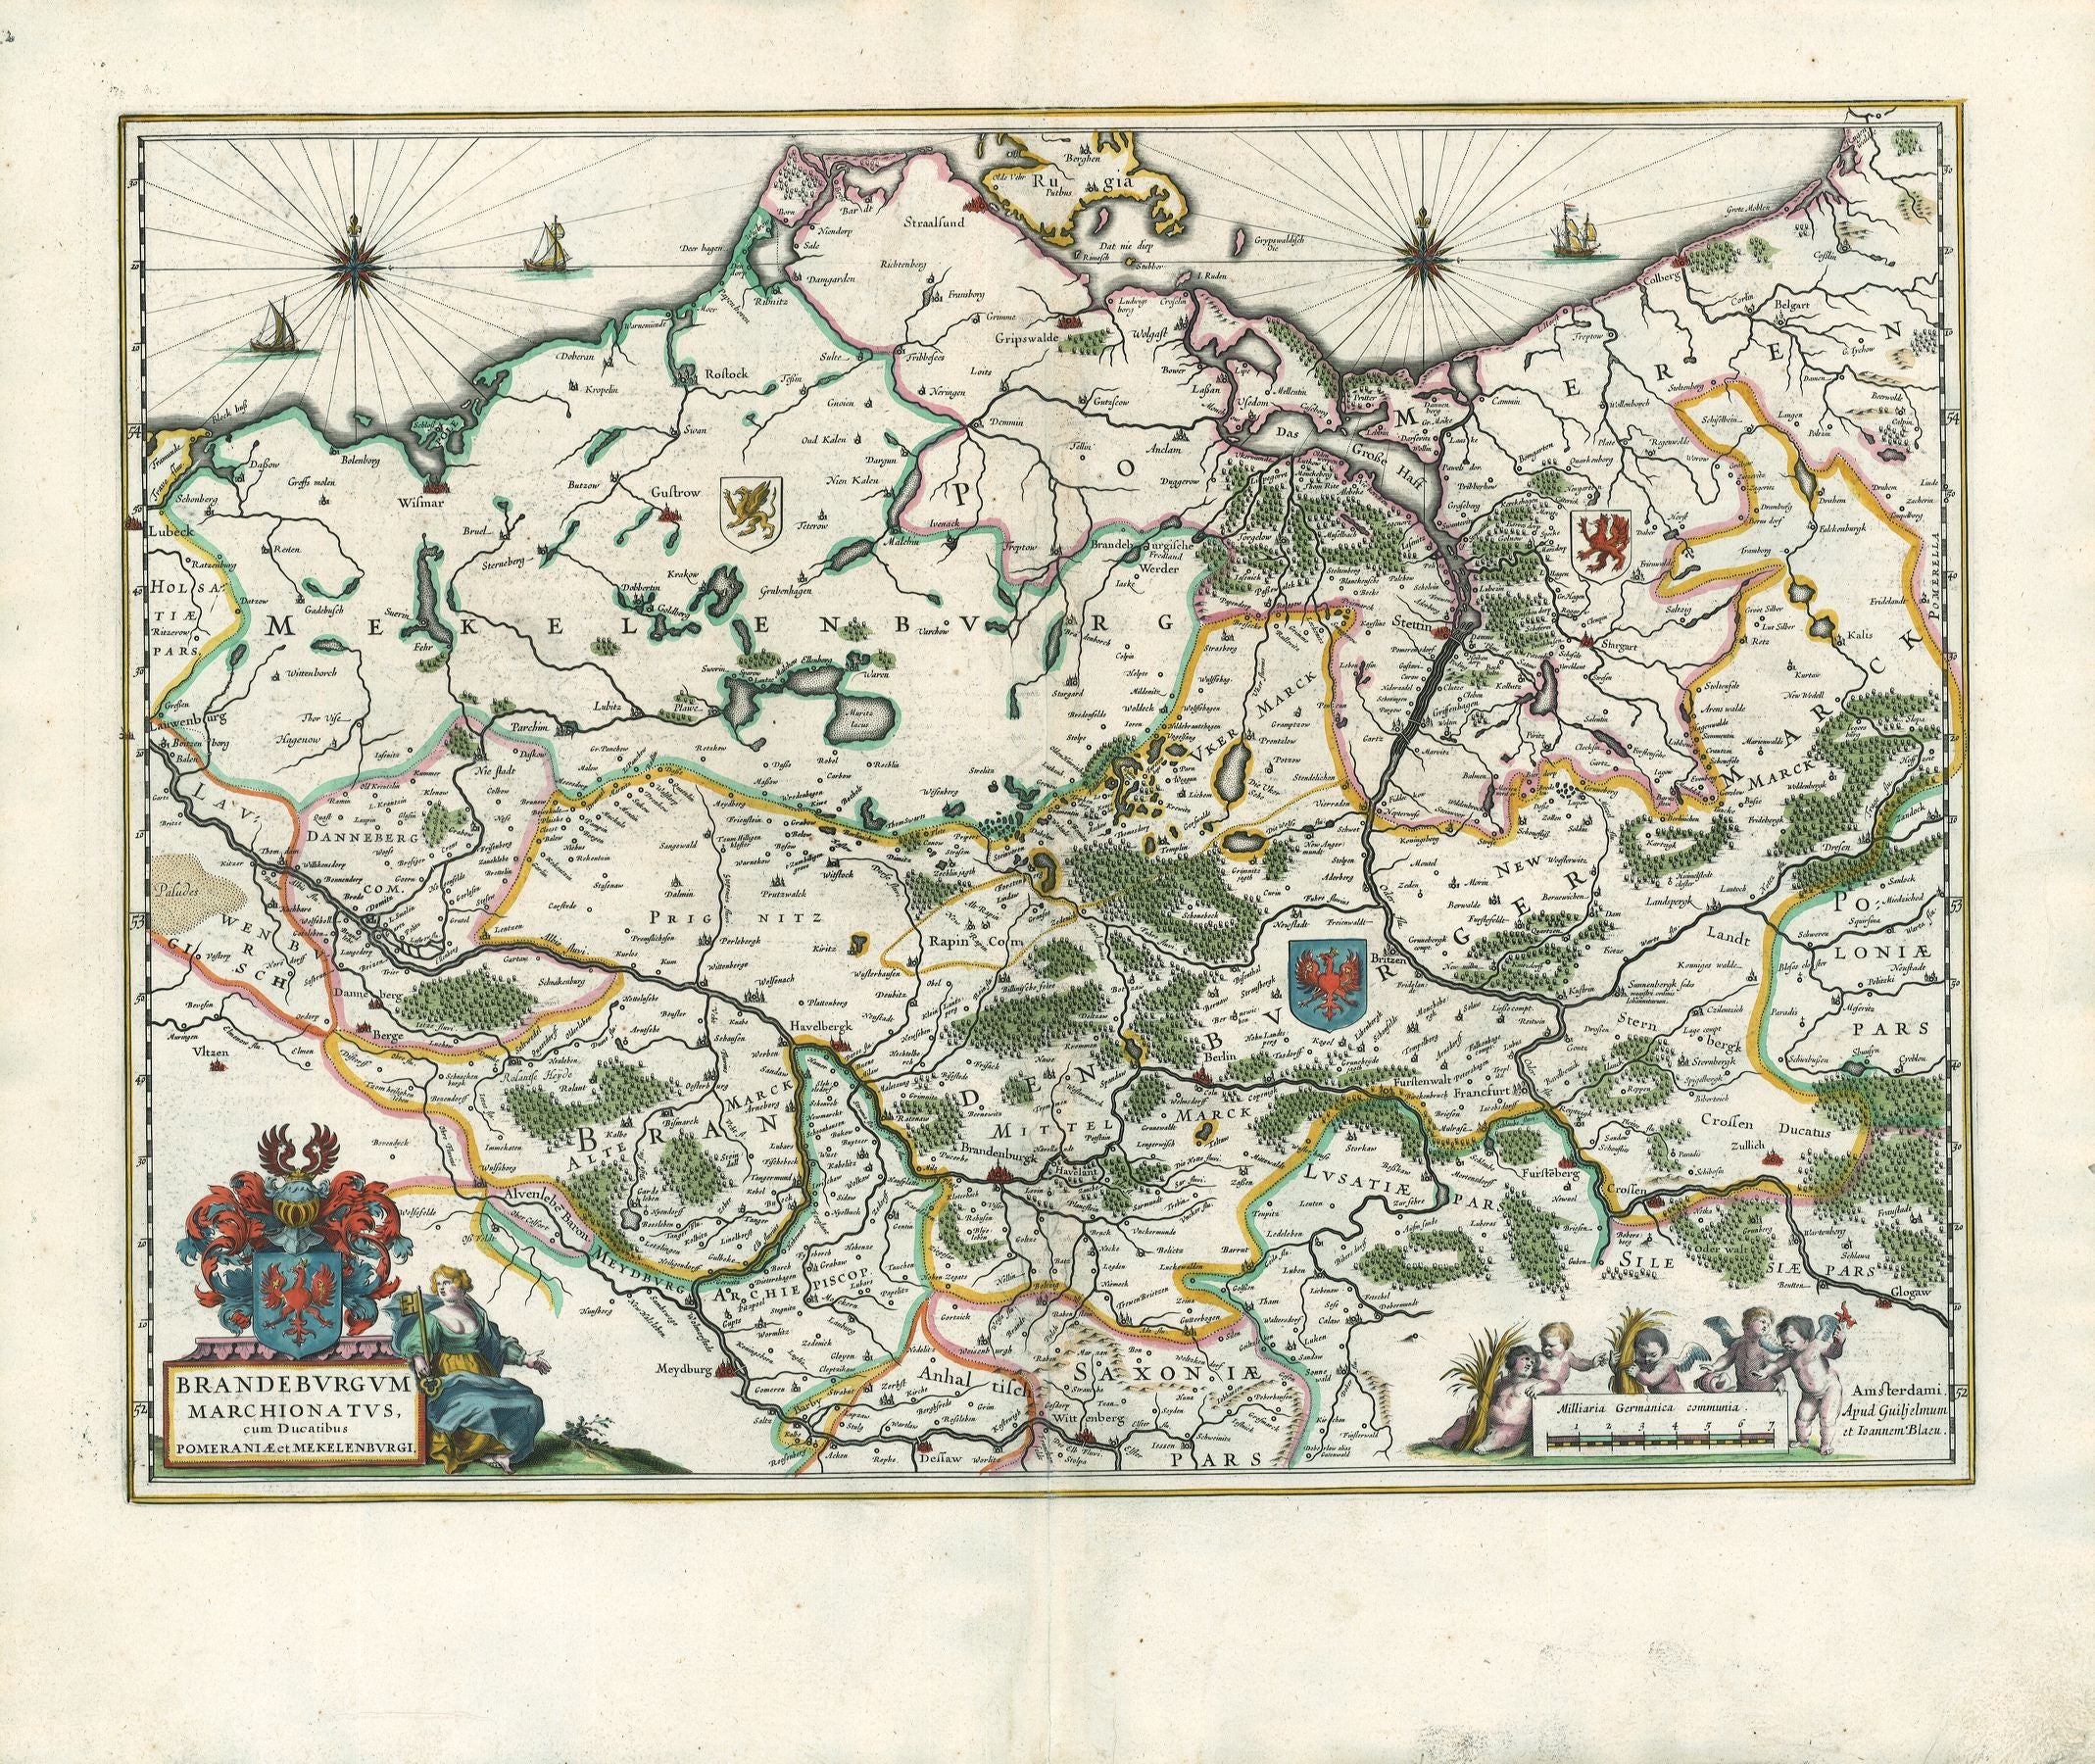 Blaeu, W.u.J.: Brandeburgum Marchionatus cum Ducatibus Pomeraniae et Mekelenburgi. 1631